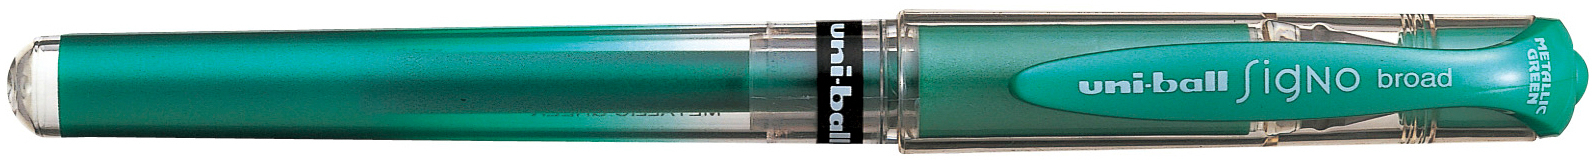 UNI-BALL Signo Broad 1mm UM153MET.GRE vert-métalic vert-métalic